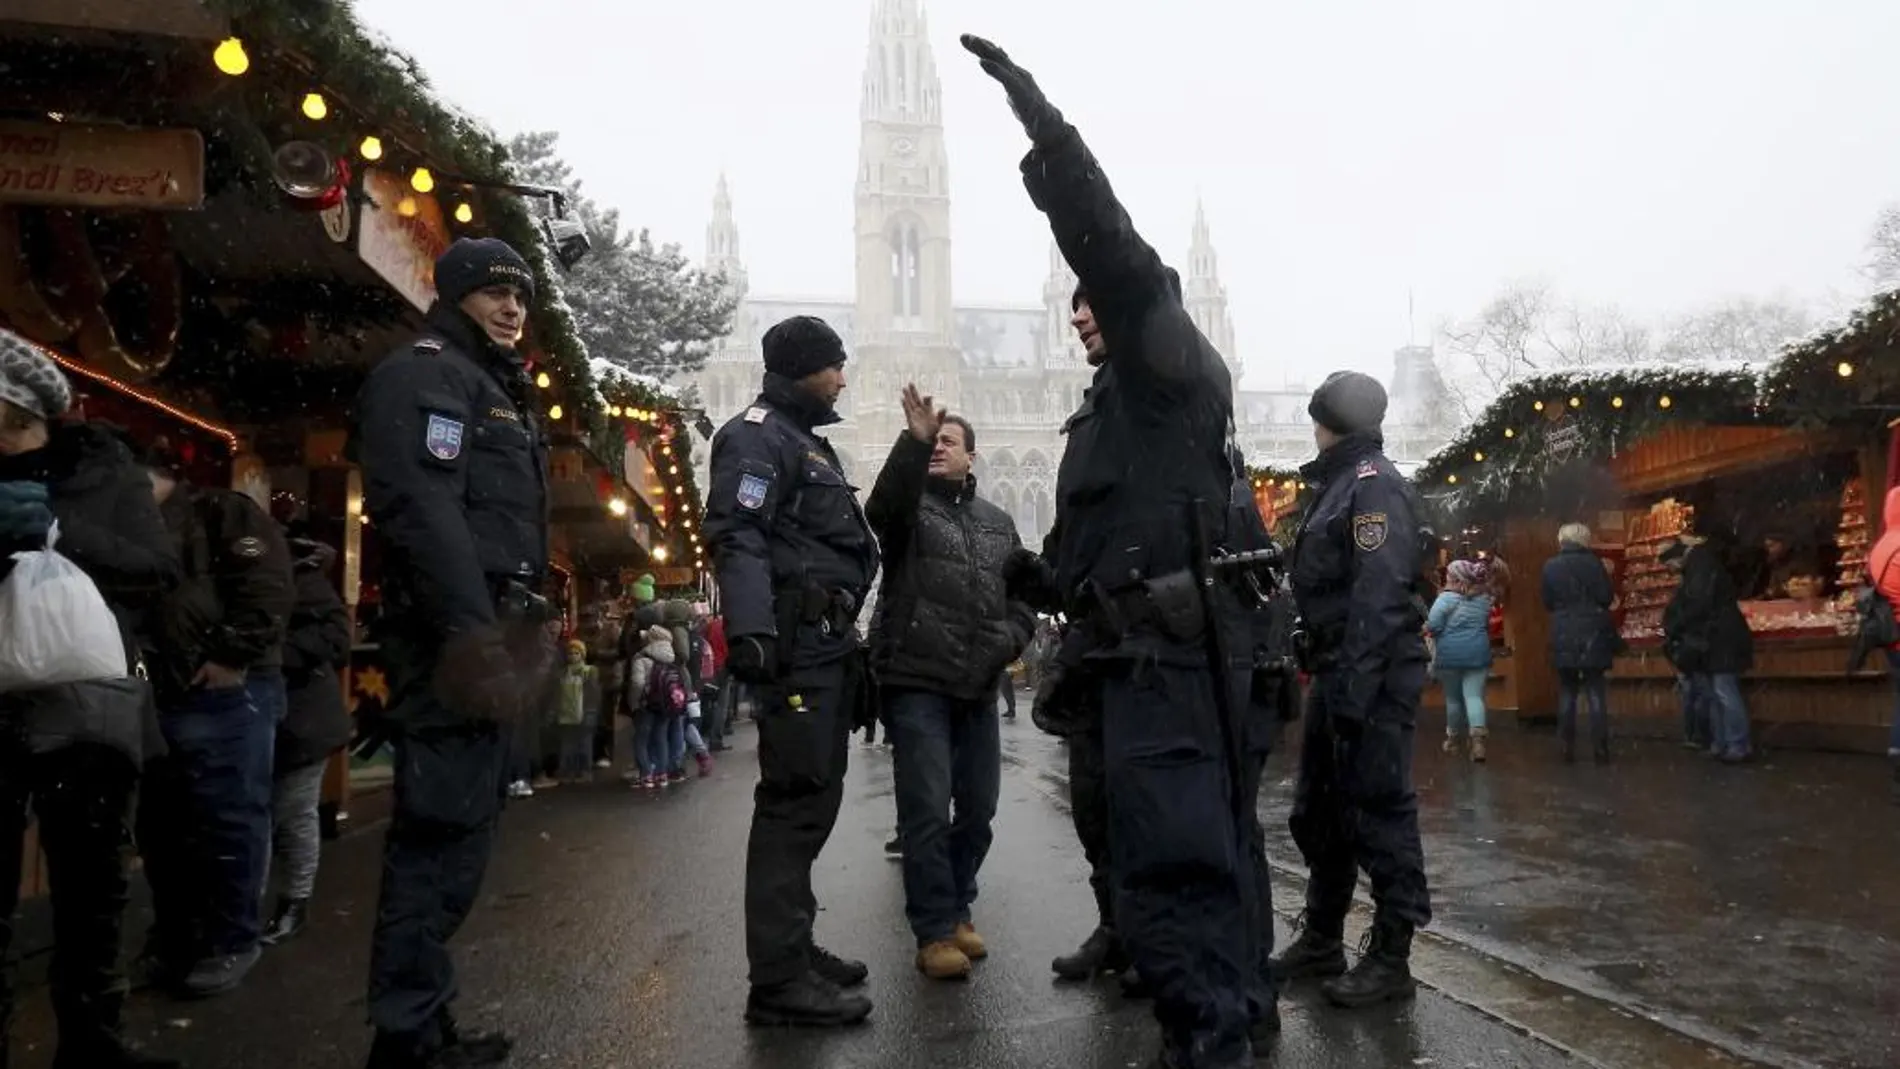 La vigilancia se reforzó en los mercados navideños tras el atentado de Berlín.